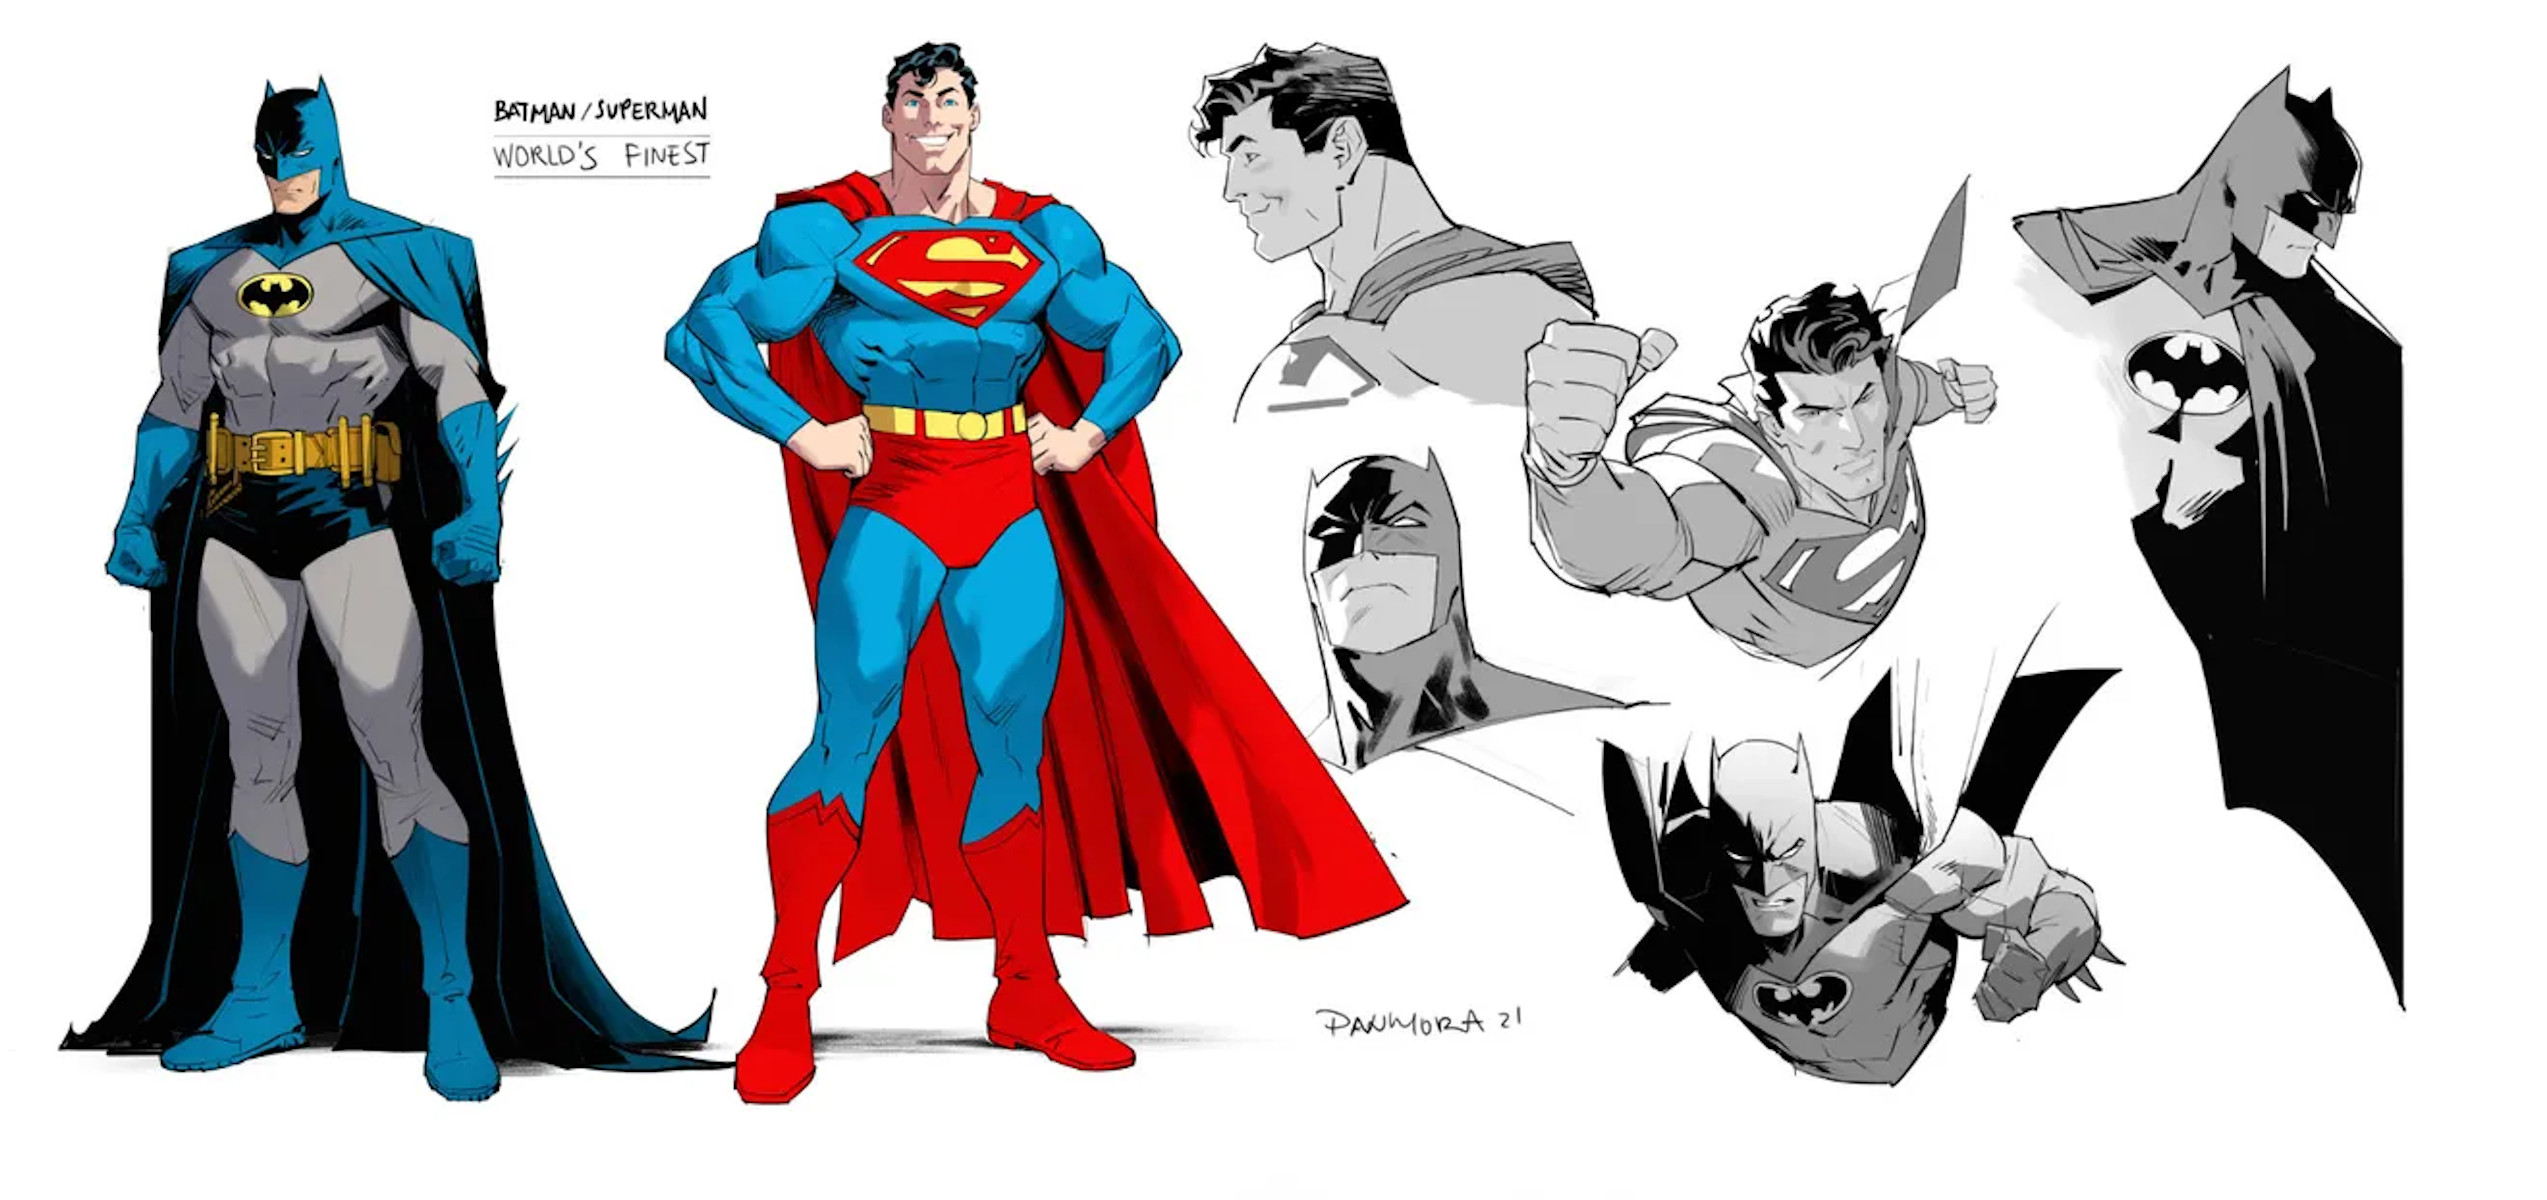 Batman and Superman Character Designs by Dan Mora